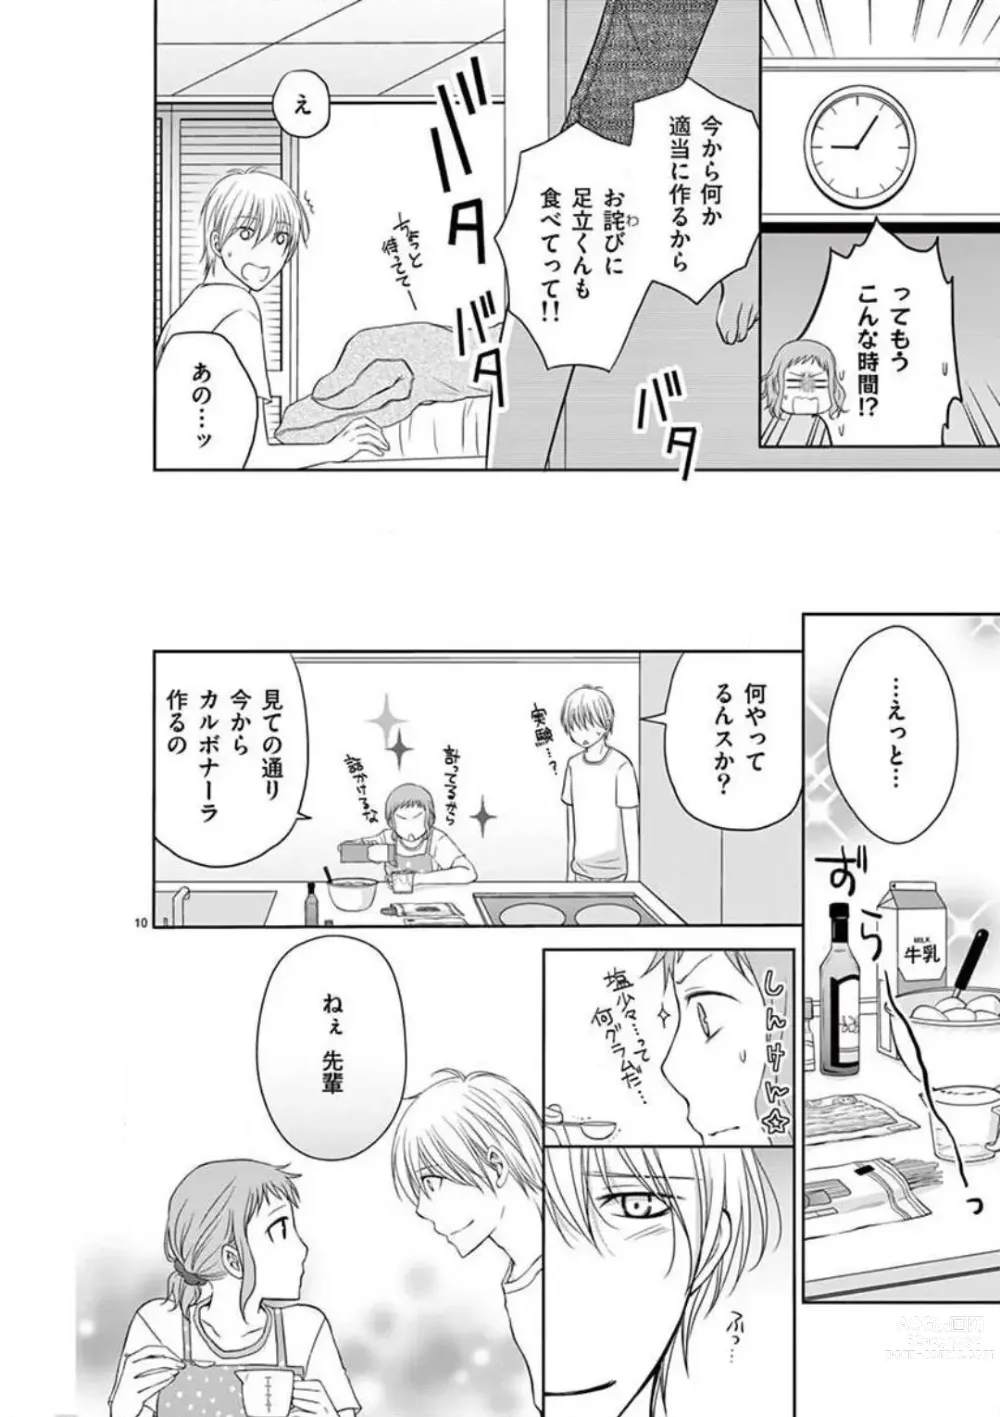 Page 10 of manga Senpai Gentei no Kedamonodesukara 〜 Kanshō-yō Ikemen no Hotobashiru Aijō〜 1-4